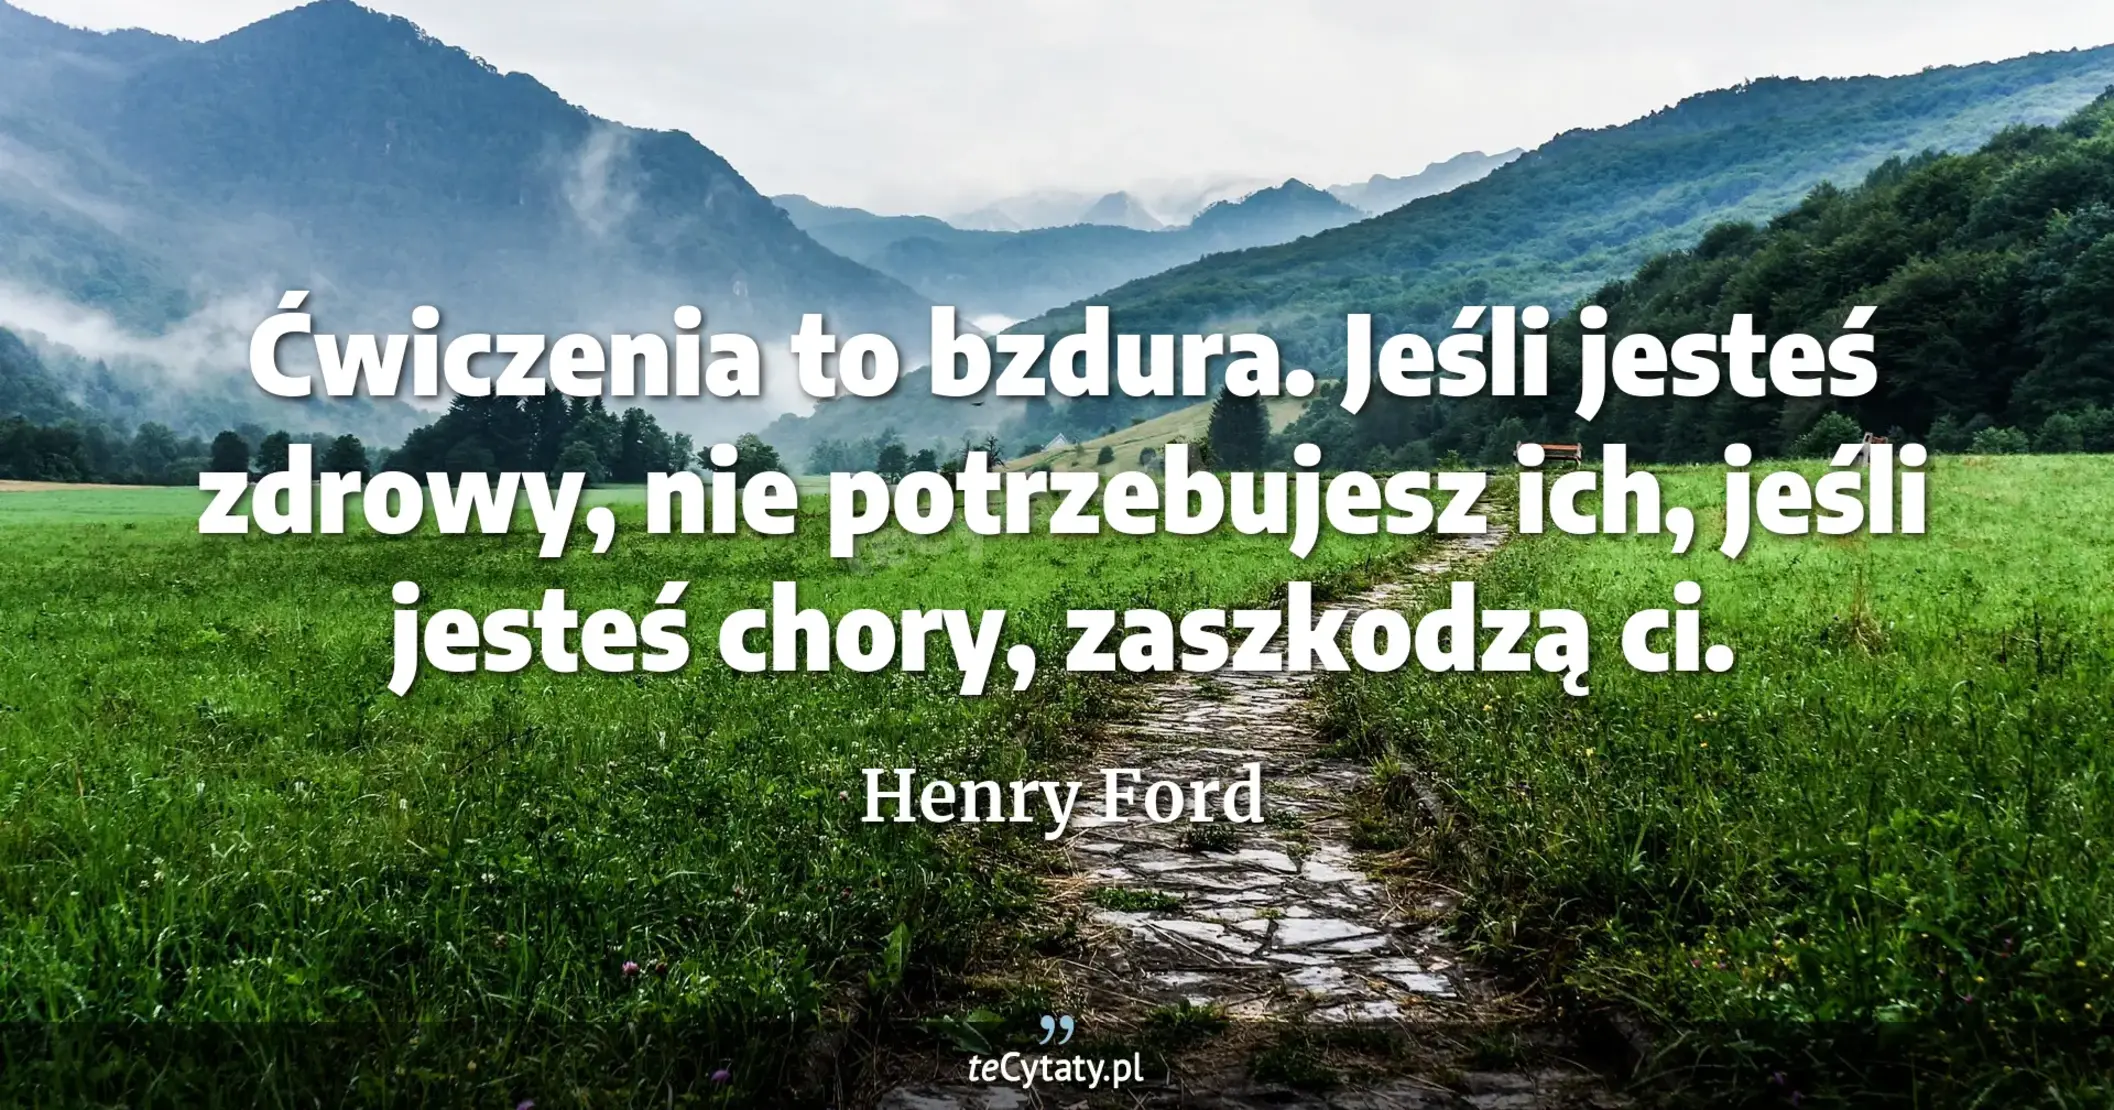 Ćwiczenia to bzdura. Jeśli jesteś zdrowy, nie potrzebujesz ich, jeśli jesteś chory, zaszkodzą ci. - Henry Ford